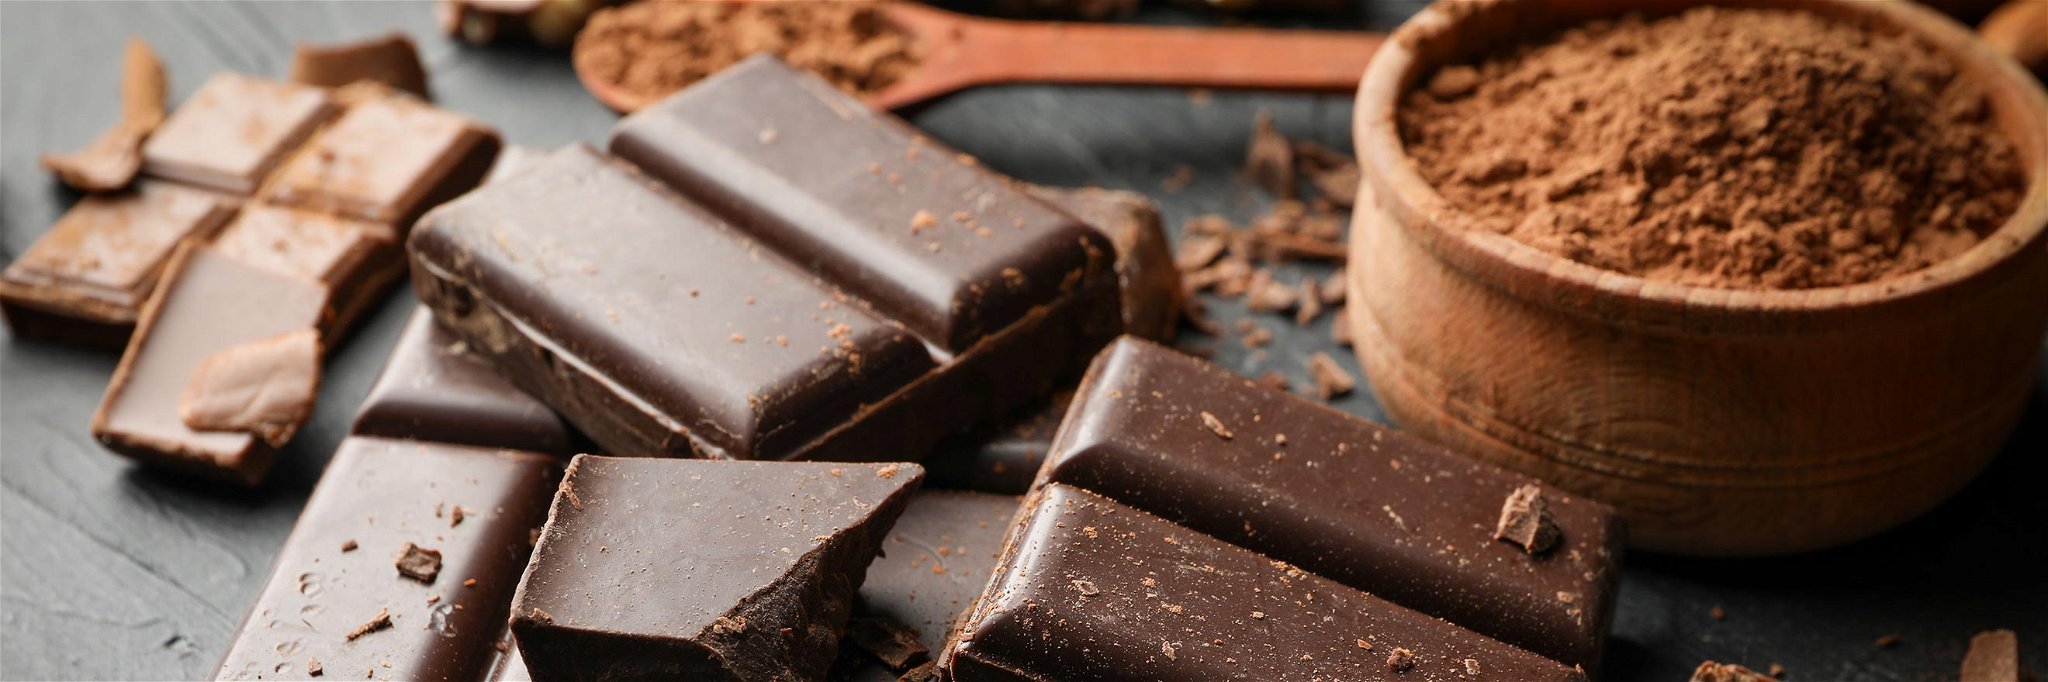 Die meisten in Deutschland verarbeiteten Kakaobohnen stammen von der Elfenbeinküste.&nbsp;